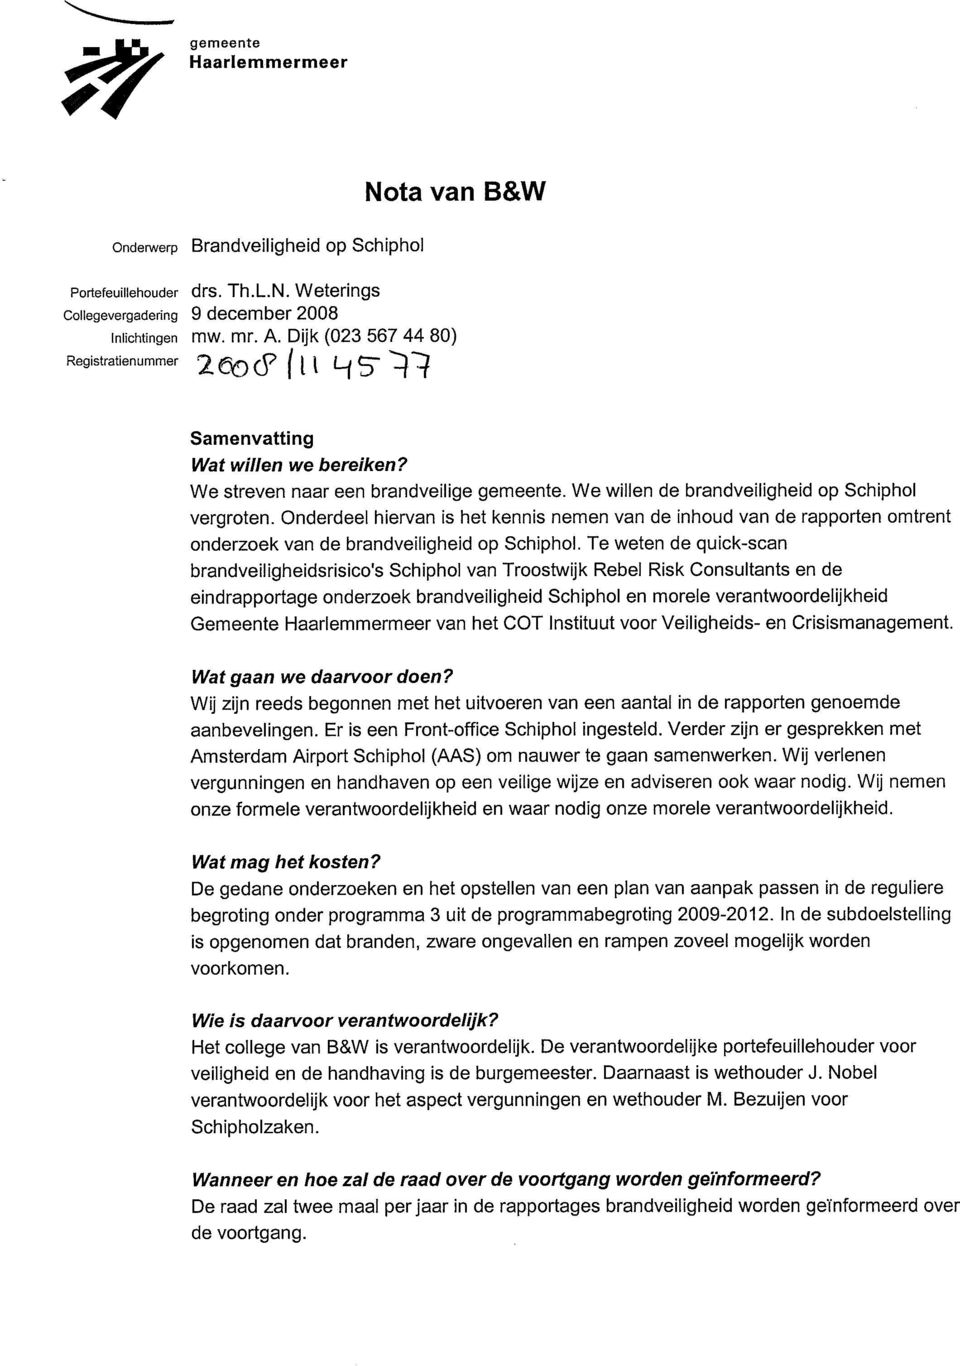 Onderdeel hiervan is het kennis nemen van de inhoud van de rapporten omtrent onderzoek van de brandveiligheid op Schiphol.